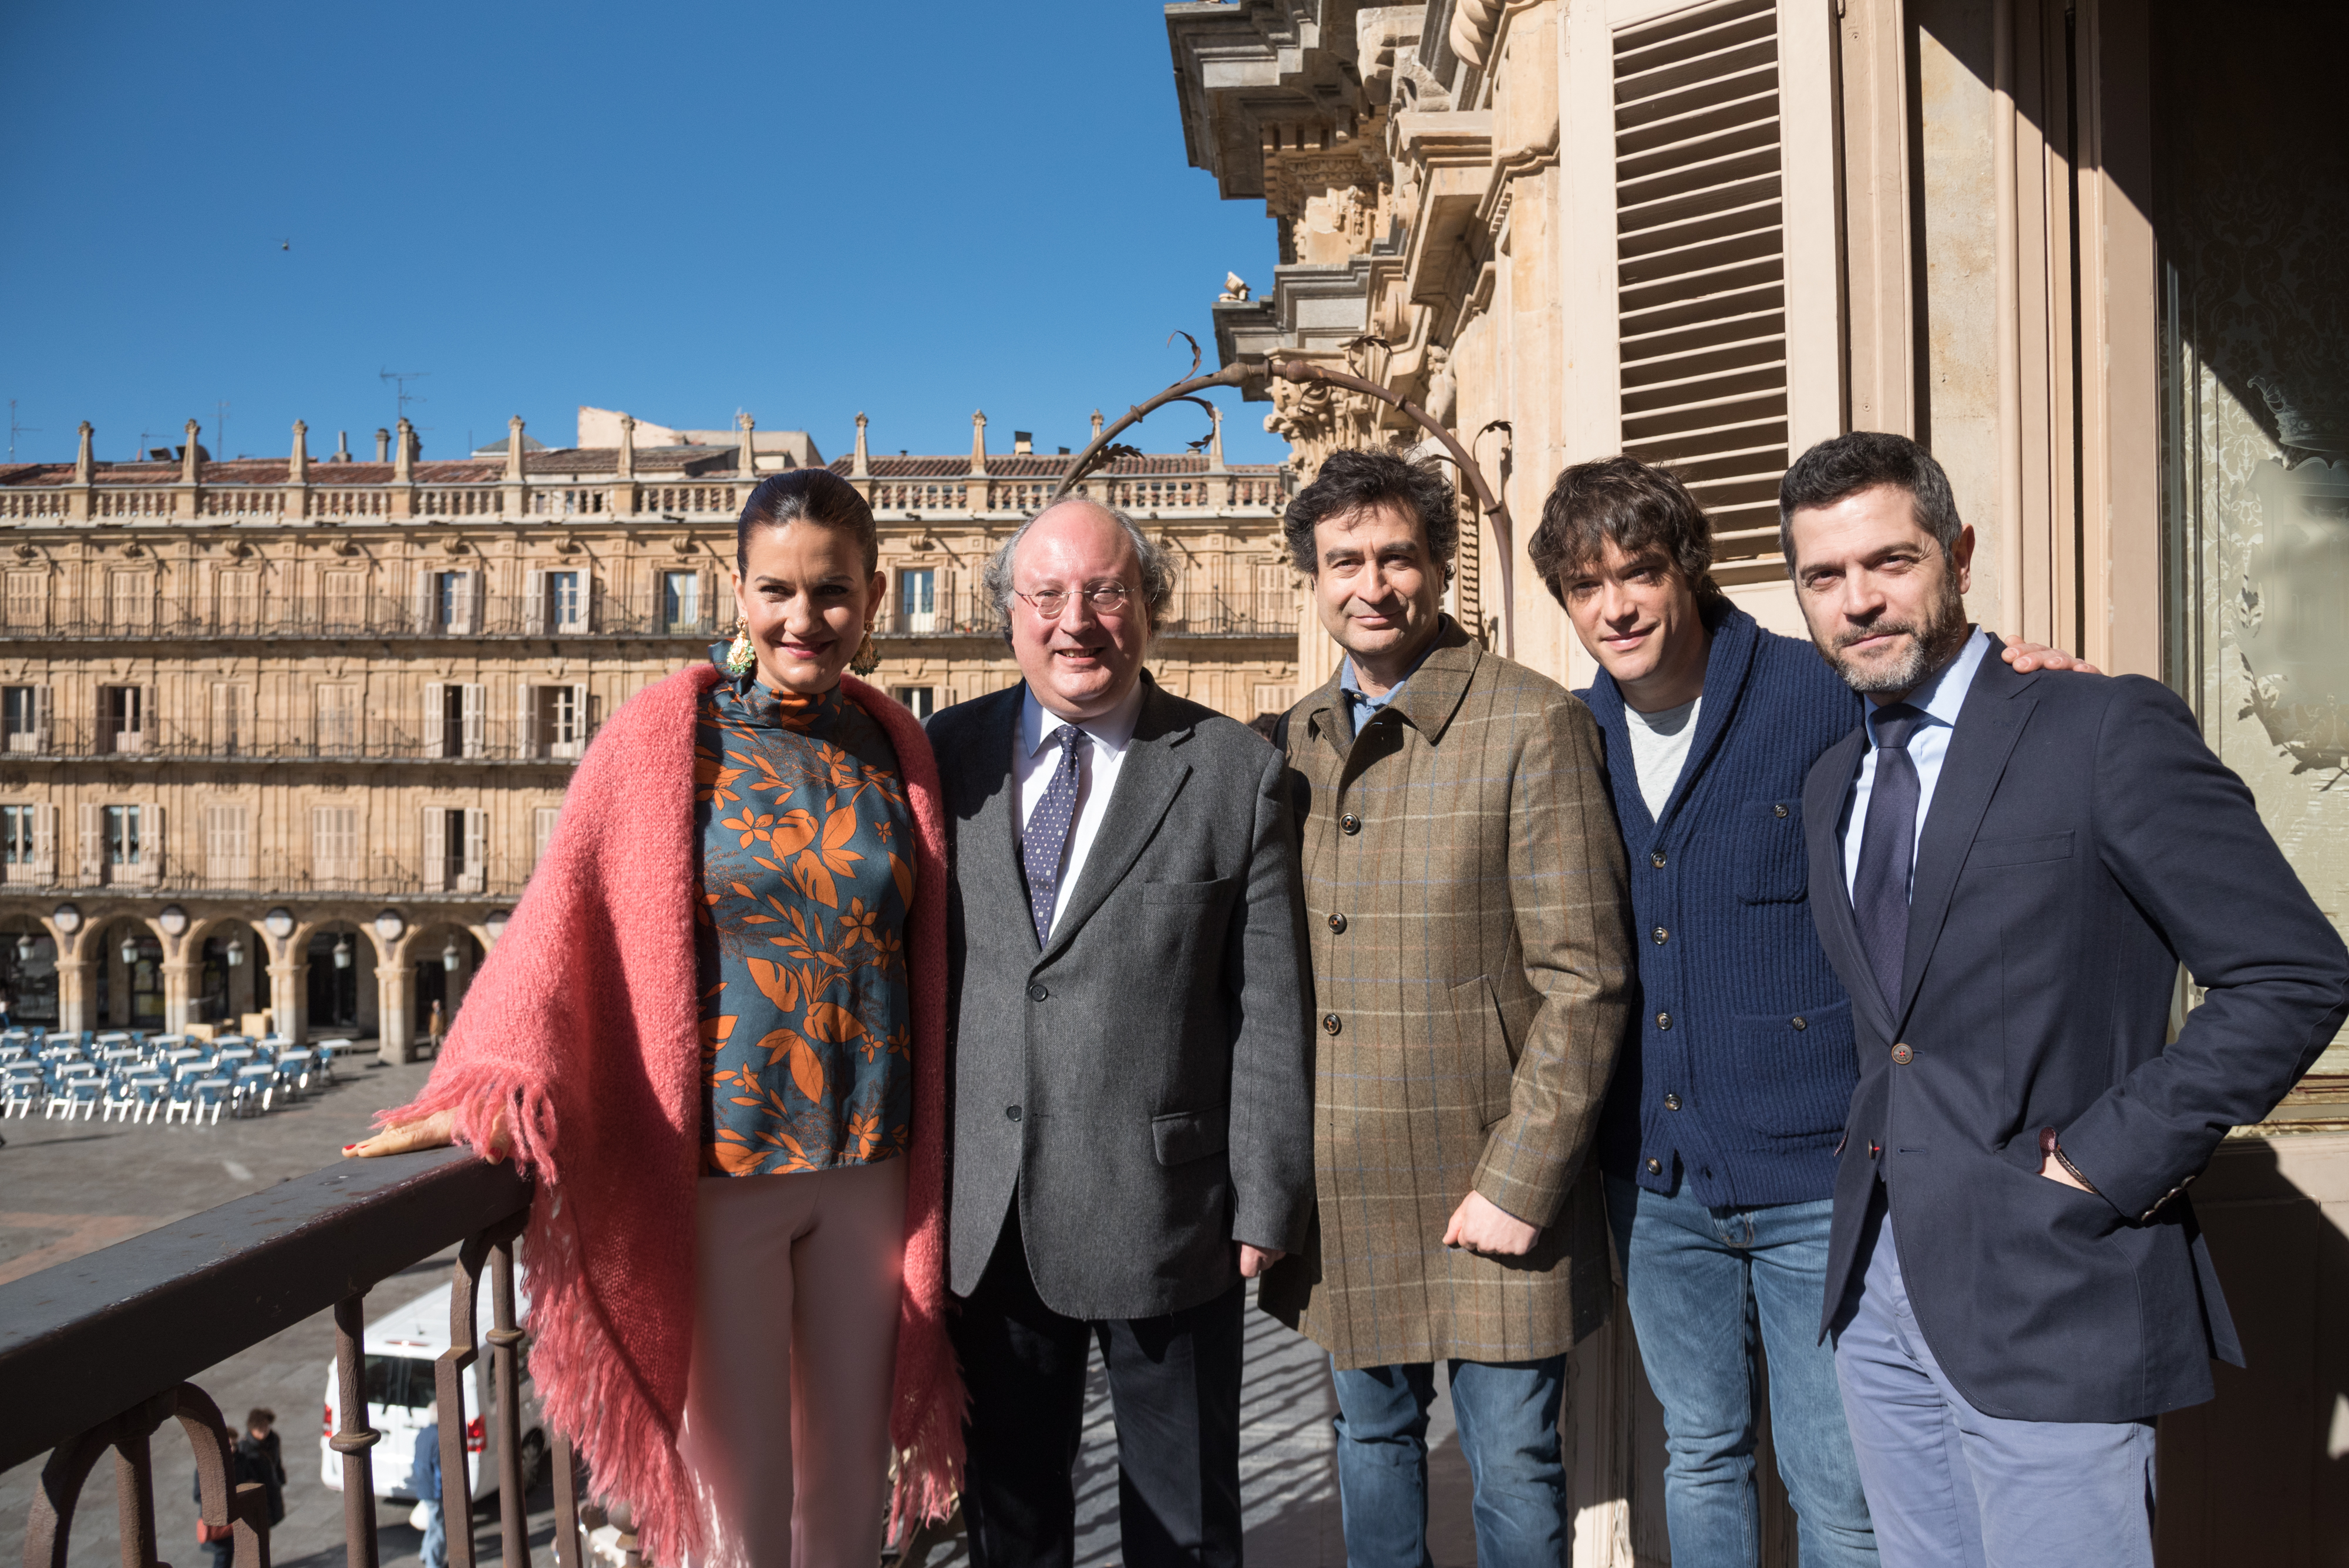 La Universidad de Salamanca acoge la grabación del programa de TVE MasterChef con motivo del VIII Centenario   